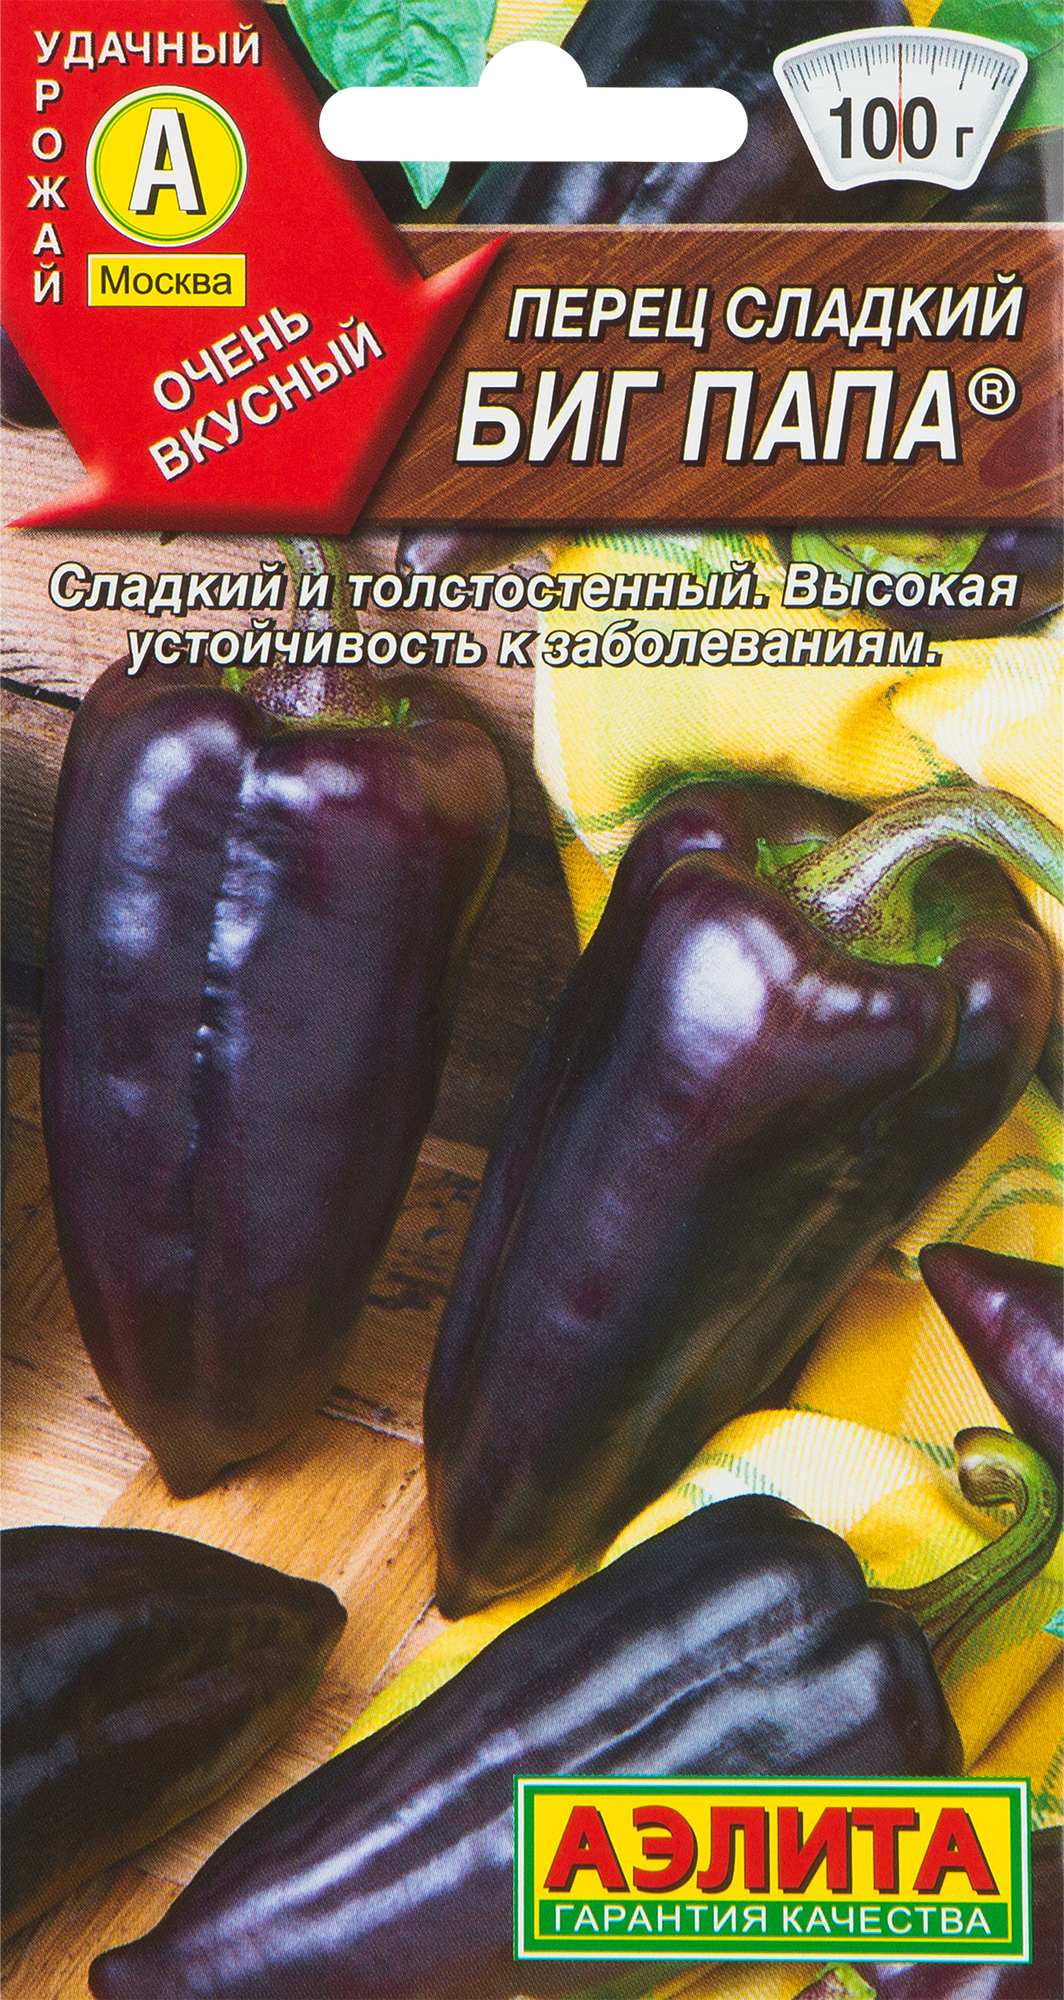 Семена овощей перец Биг папа в Москве – купить по низкой цене винтернет-магазине Леруа Мерлен